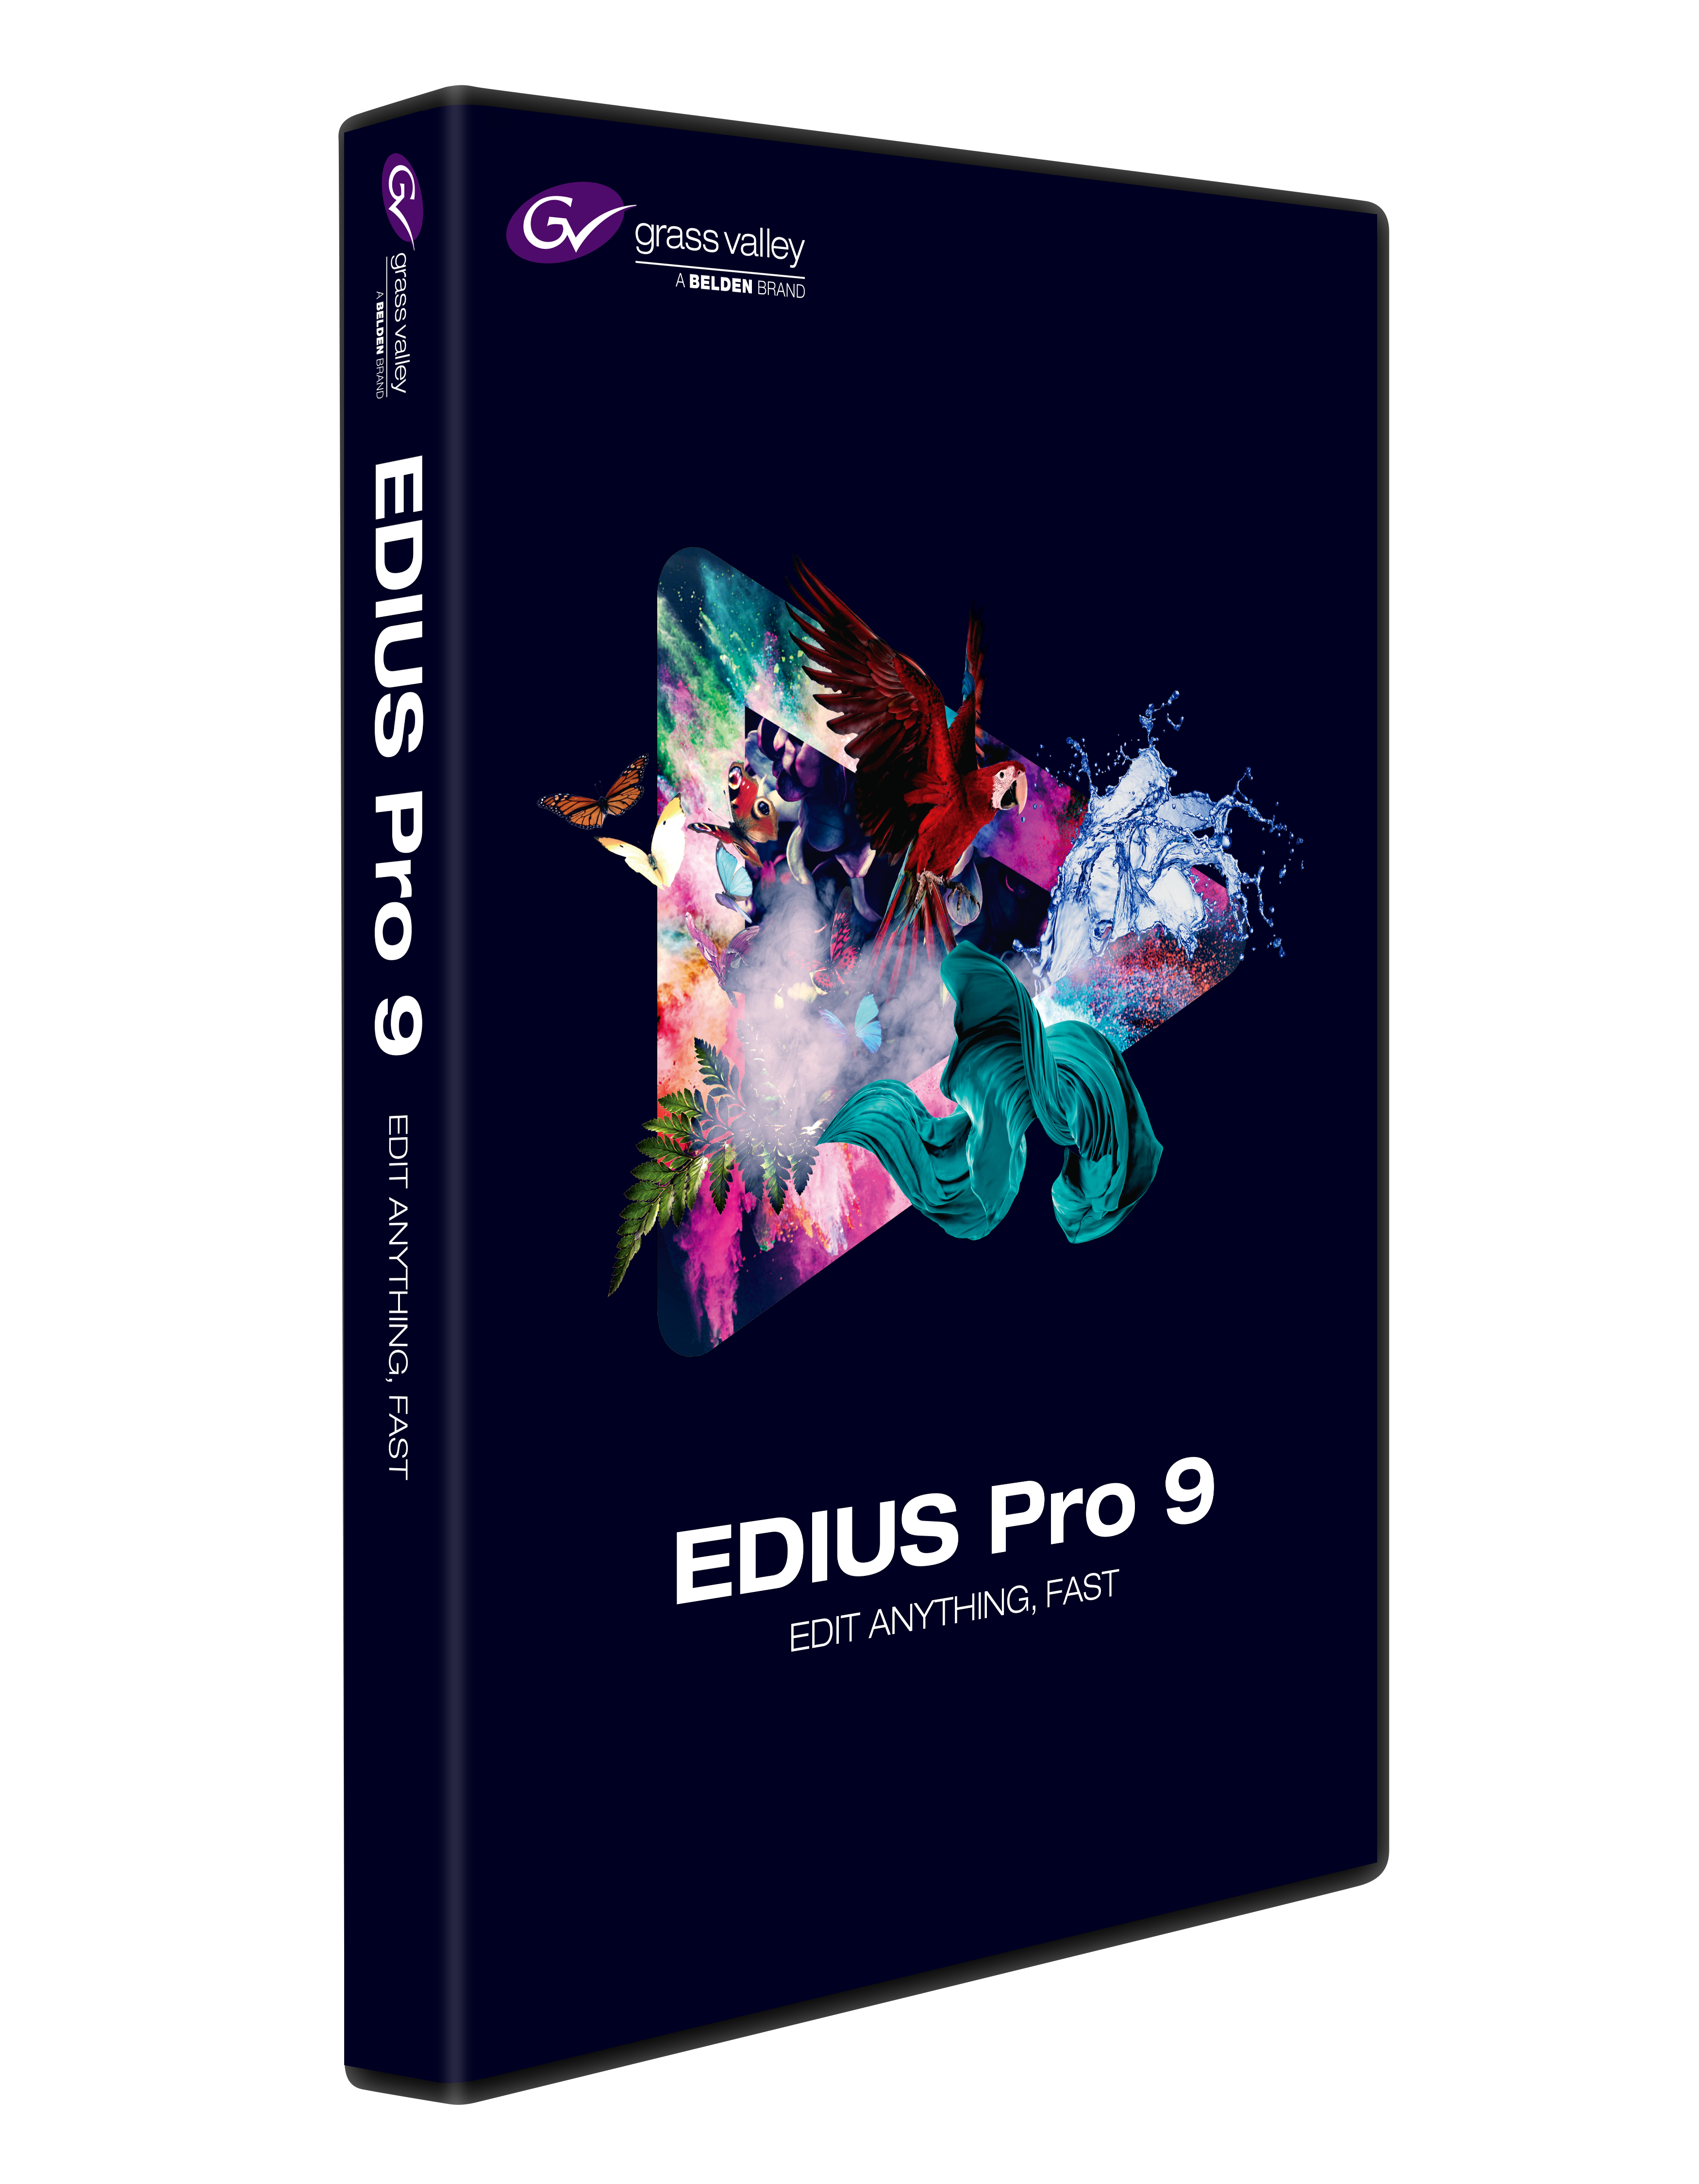 EDIUS_Pro_9_boxshot